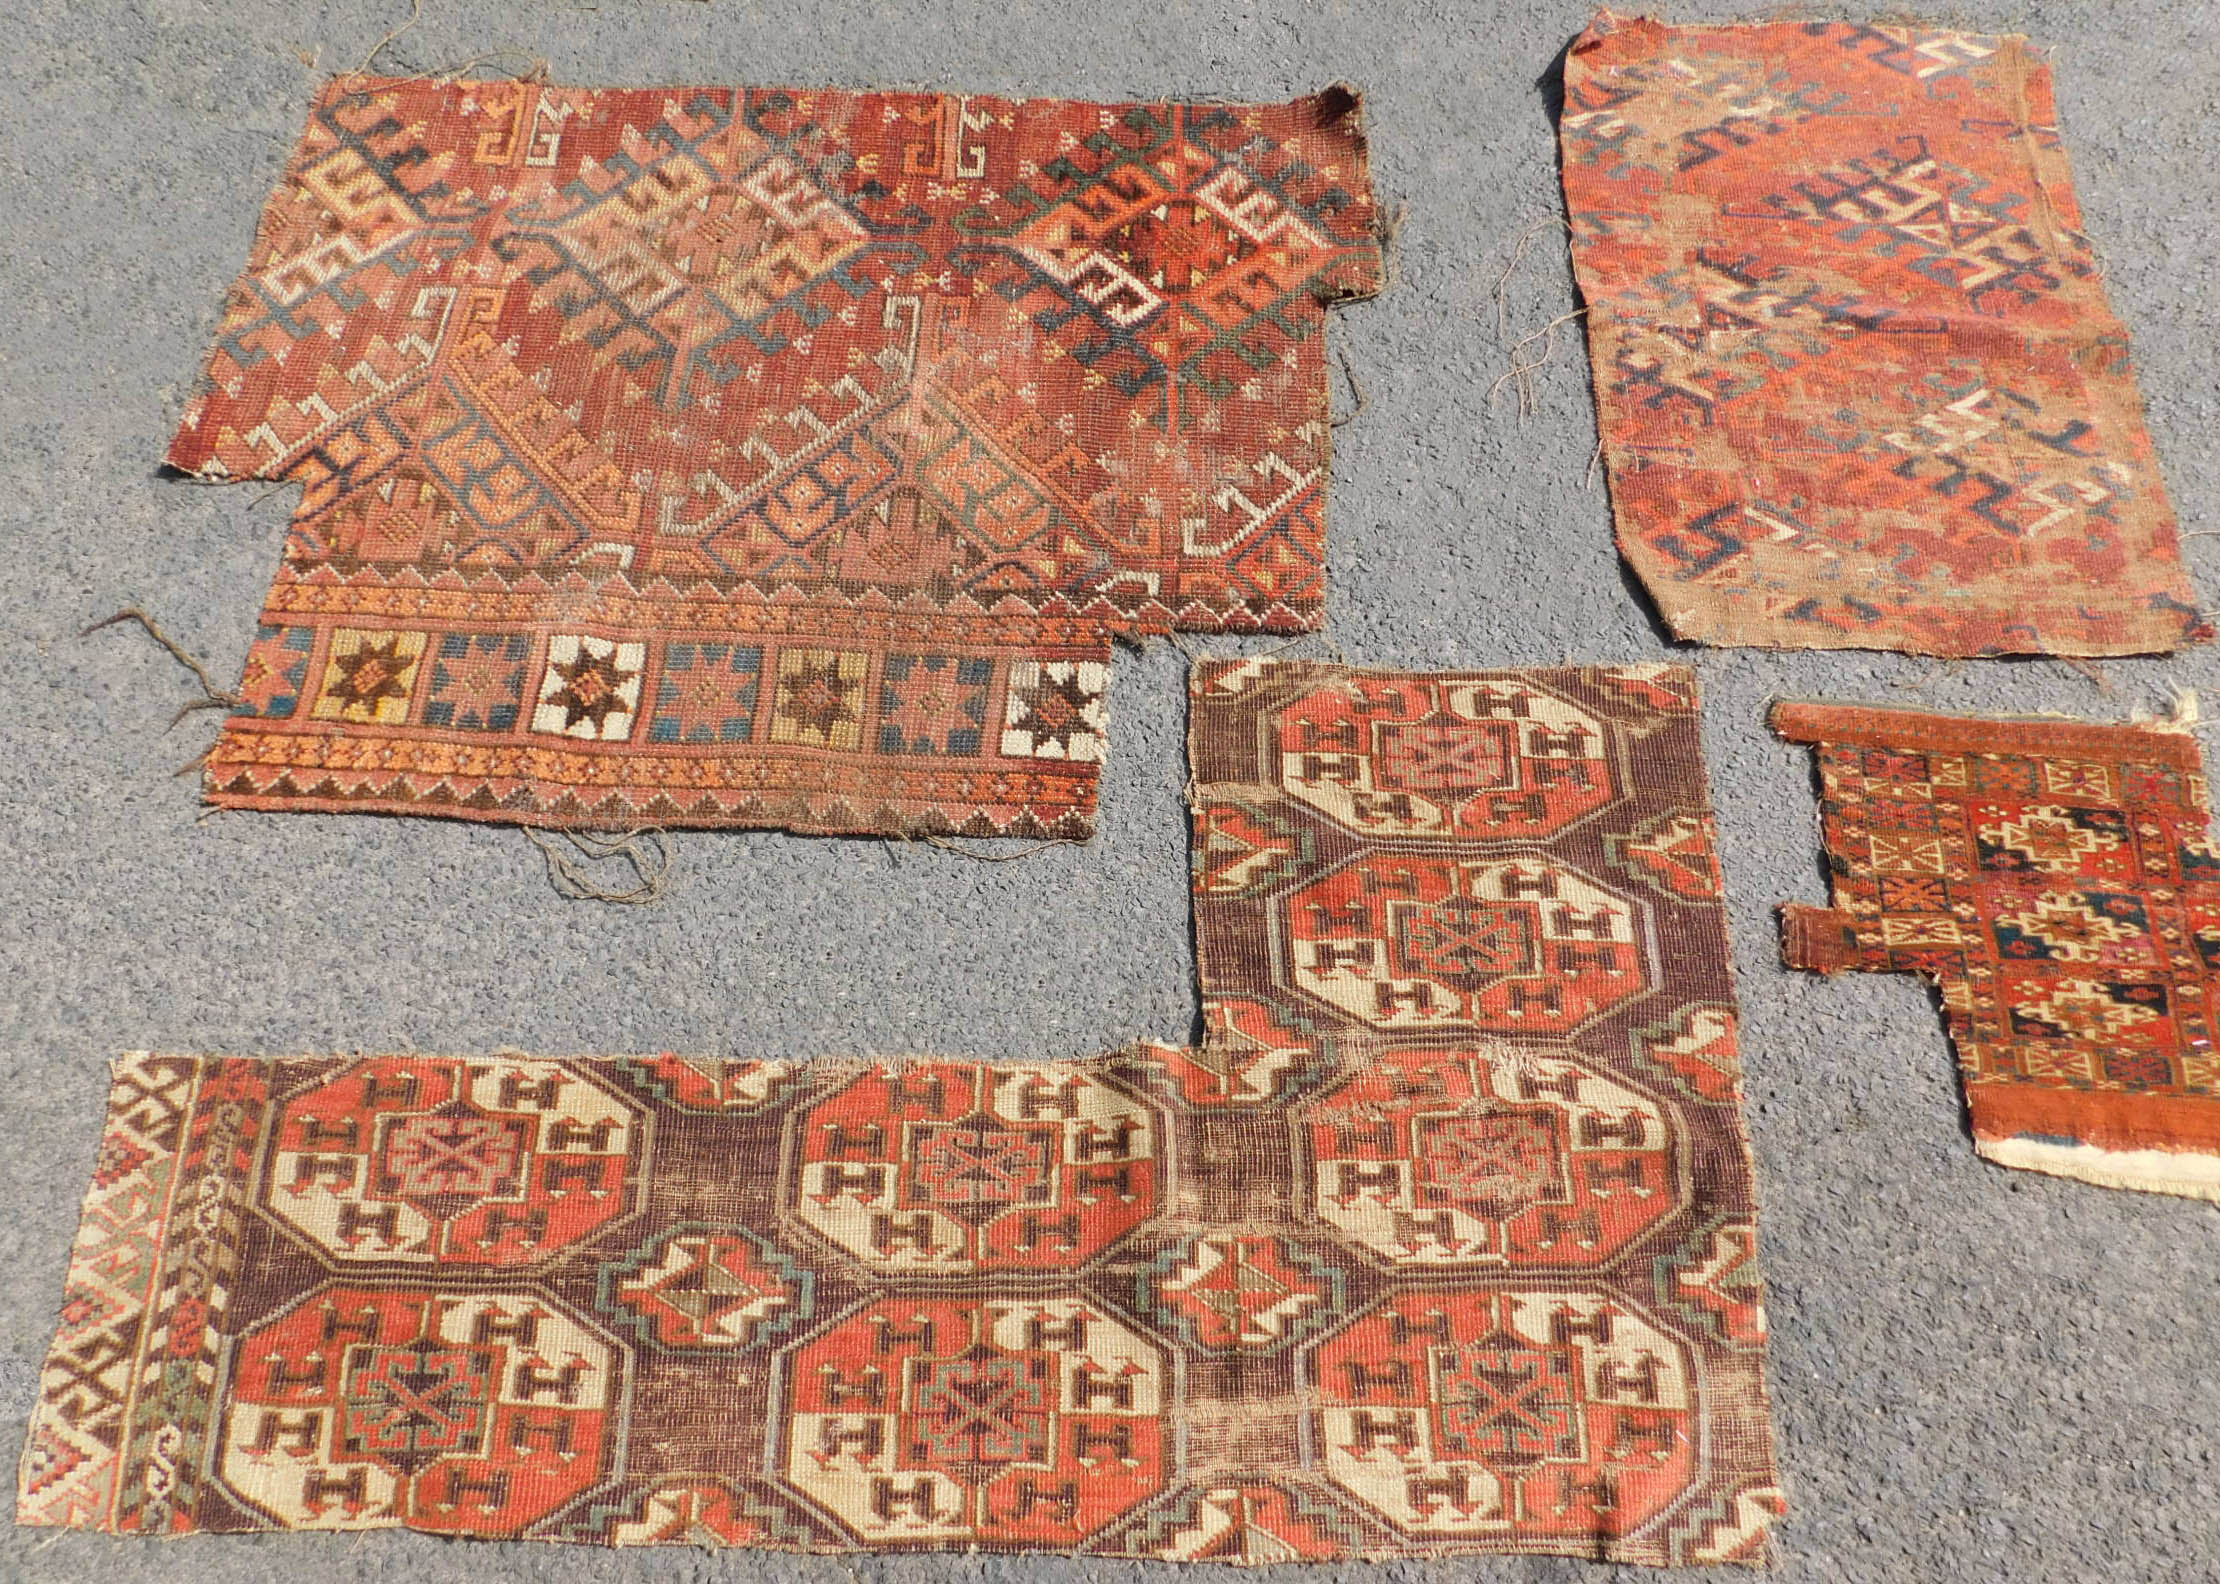 Studiensammlung. 5 Turkmenen Stammesteppich Fragmente. Antik. - Image 2 of 5